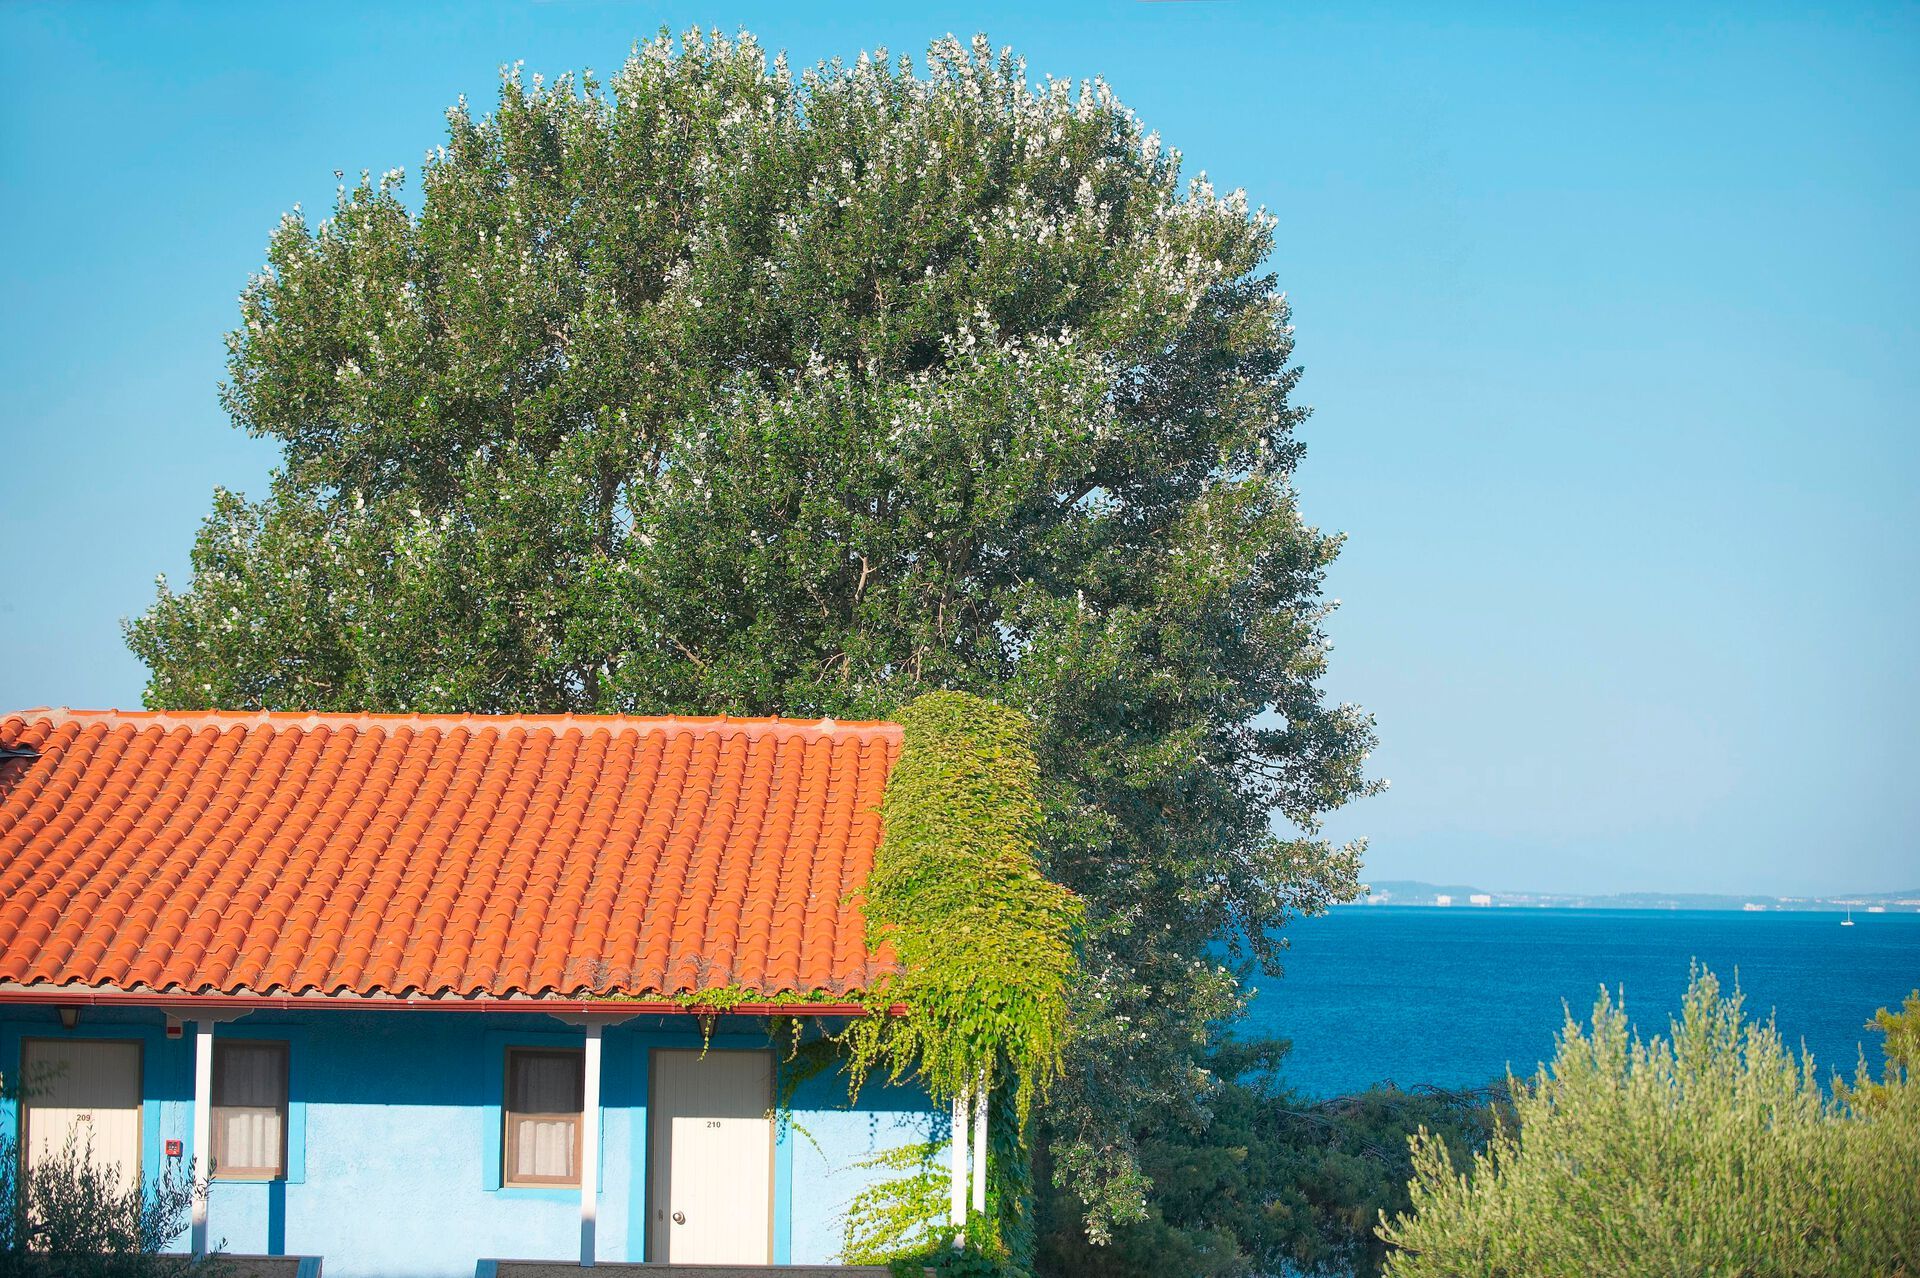 Grèce - Grèce continentale - Thessalonique et sa région - Hôtel Acrotel Elea Beach 4*